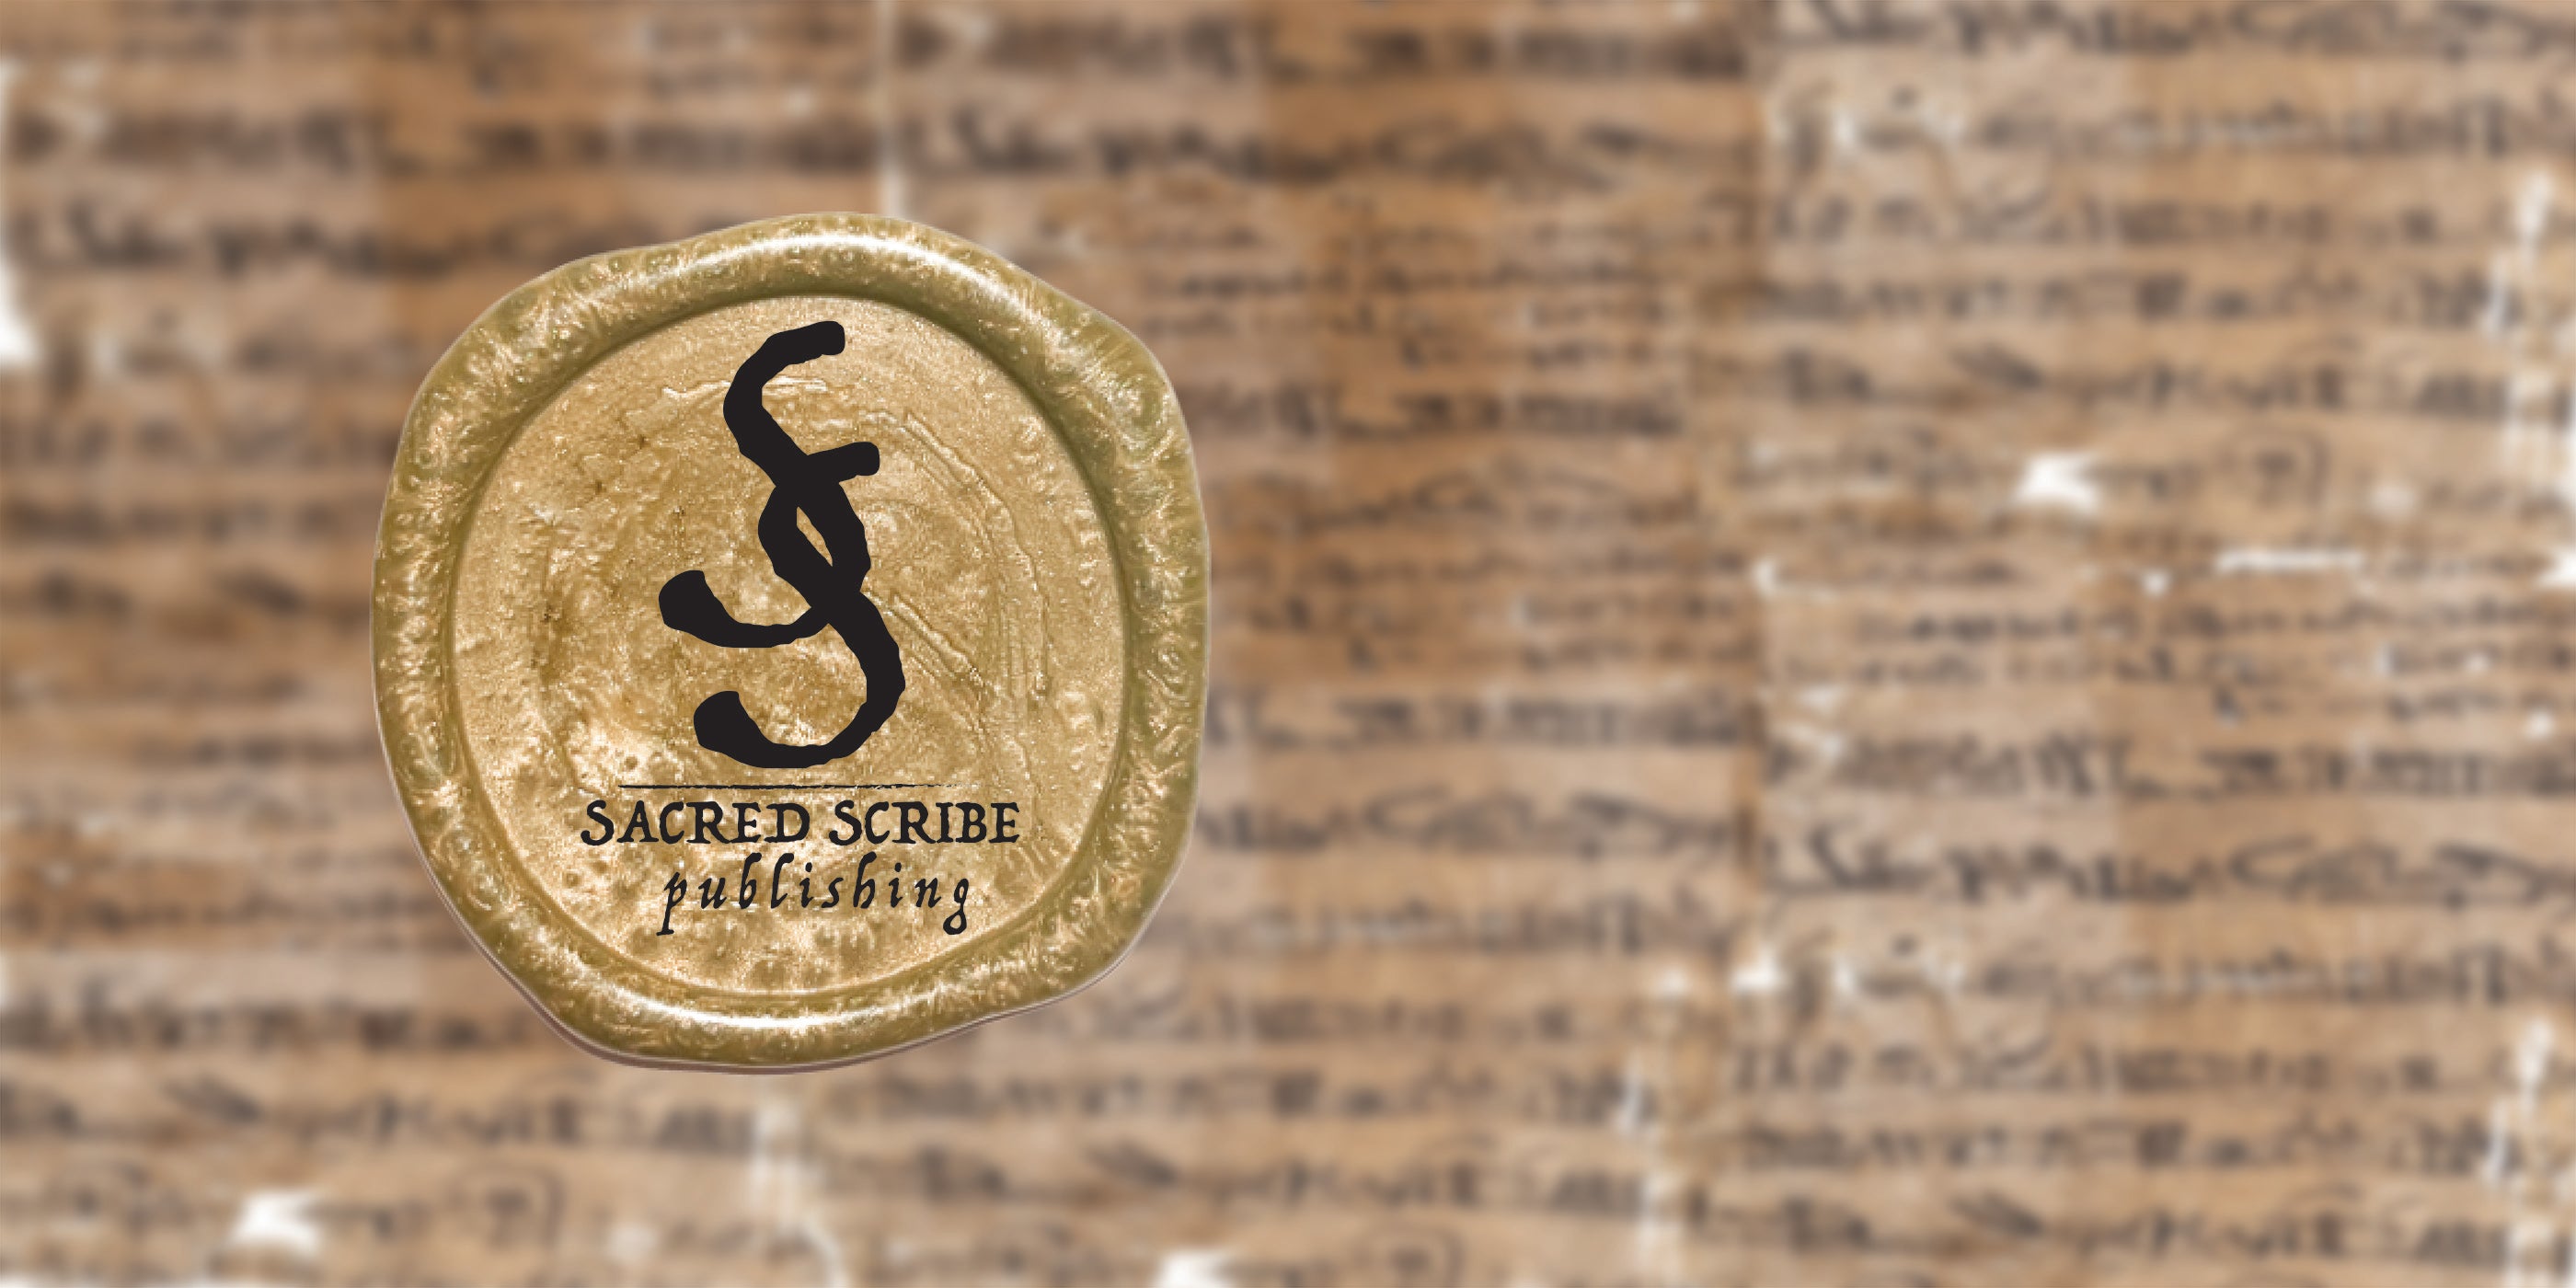 Sacred Scribe Publishing